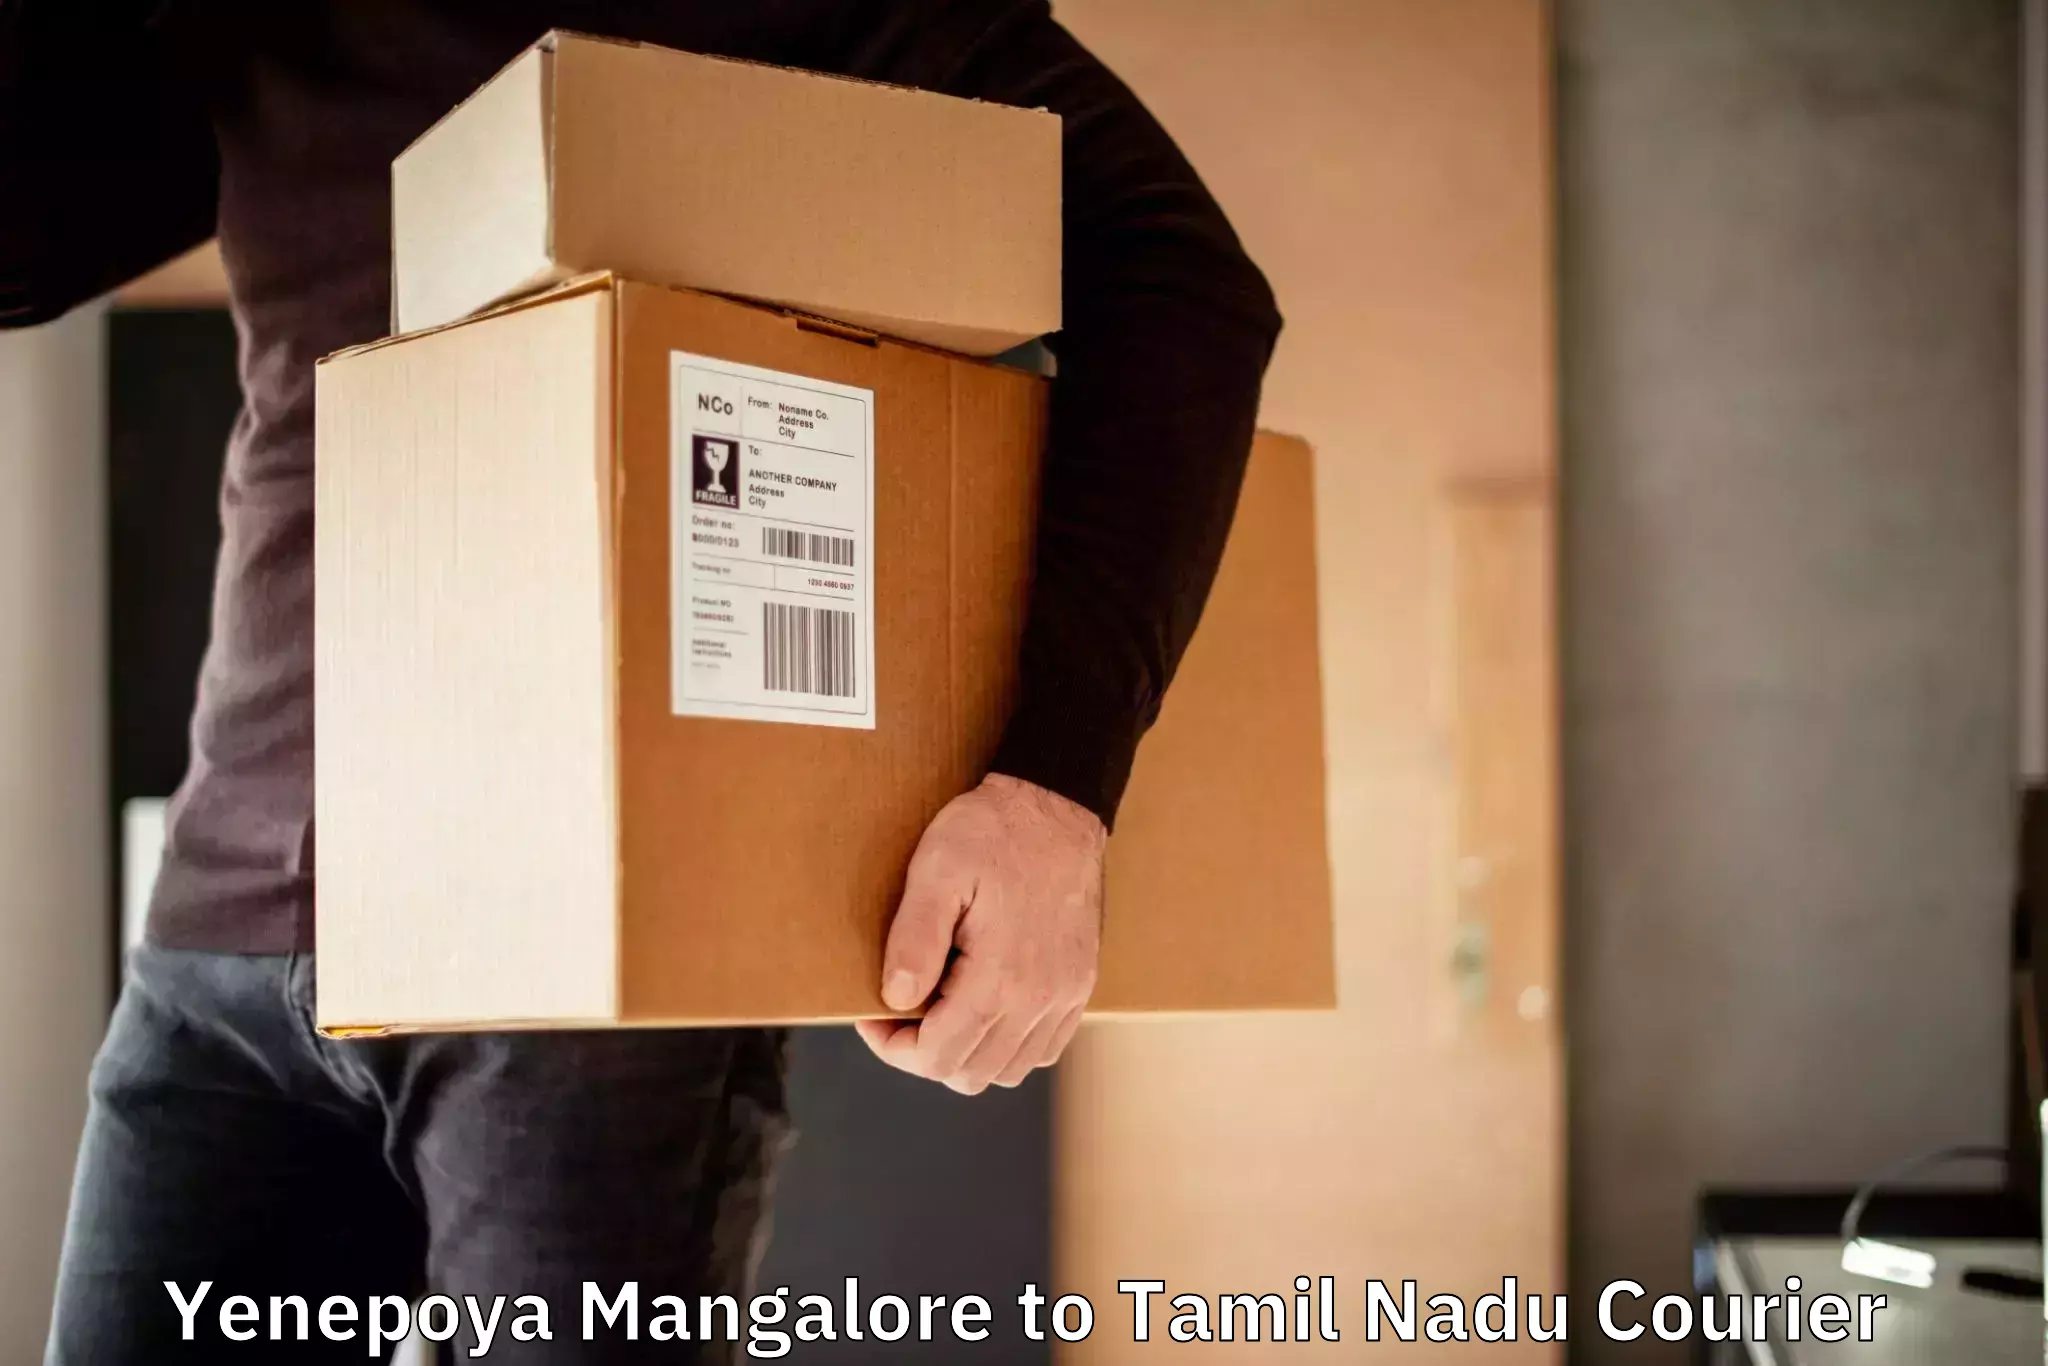 Large-scale shipping solutions Yenepoya Mangalore to Tamil Nadu